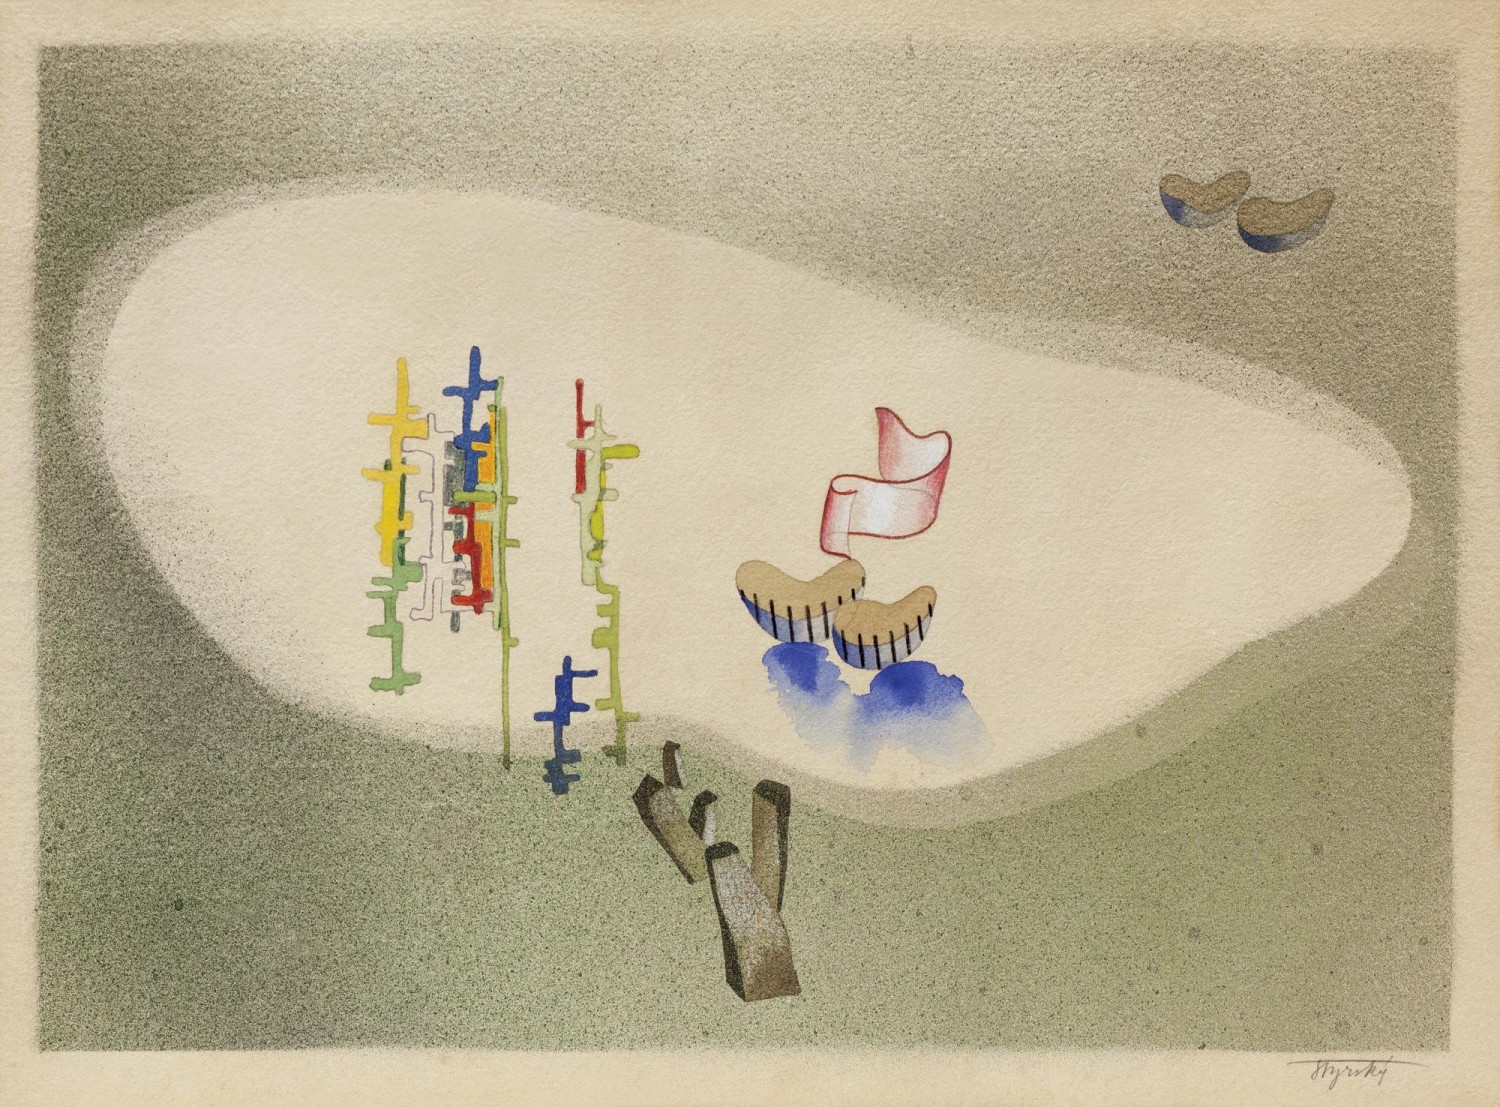 5/ Jindřich Štyrský: Zima, 1933 akvarel na papíře, 24,8 x 35 cm cena: 1 860 000 Kč, European Arts 8. 11. 2018